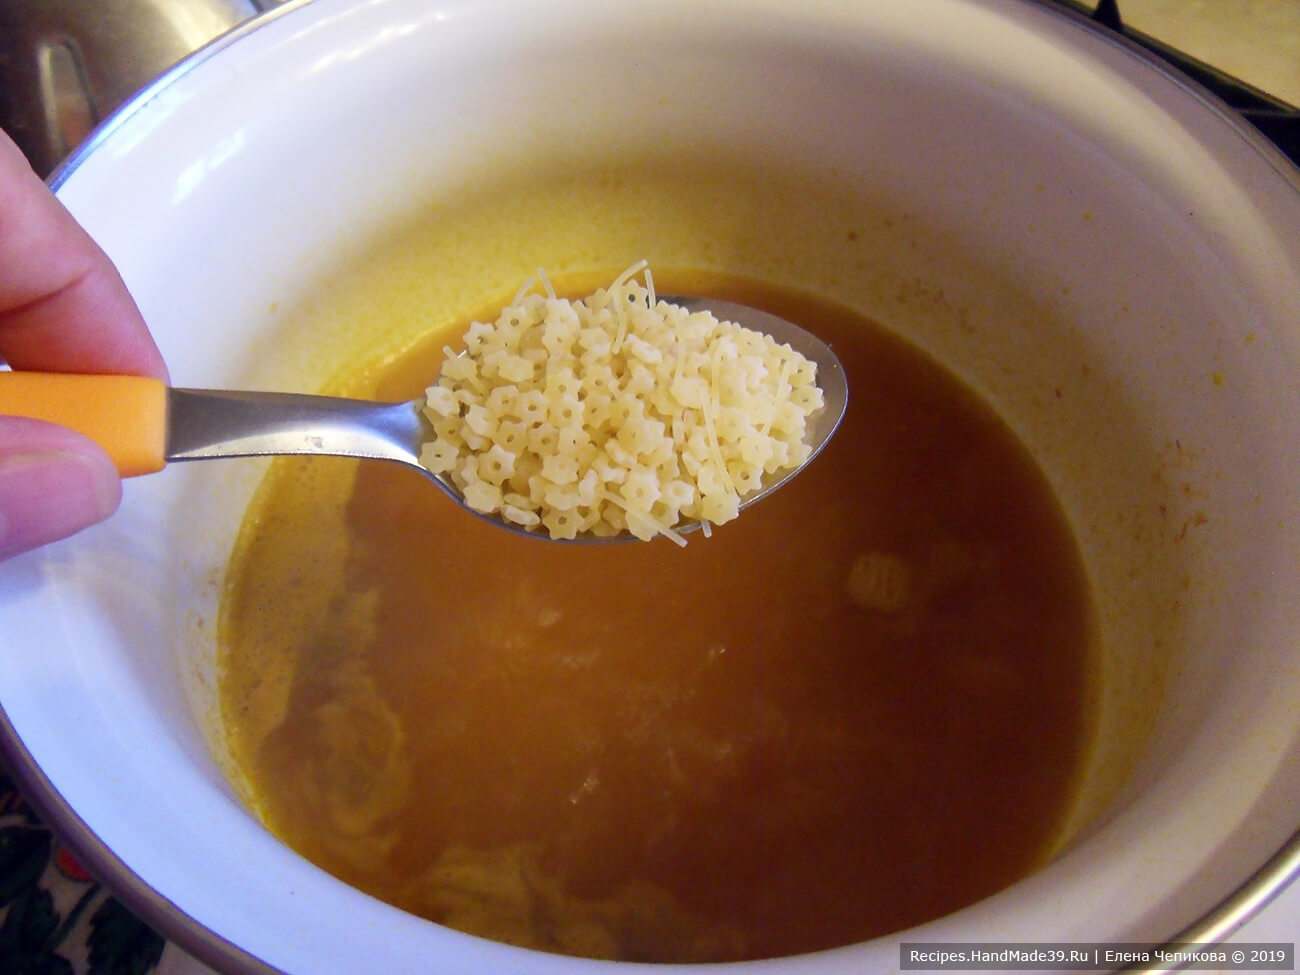 Помешивая, довести суп до кипения. Добавить вермишель, варить 10 минут на слабом огне под крышкой